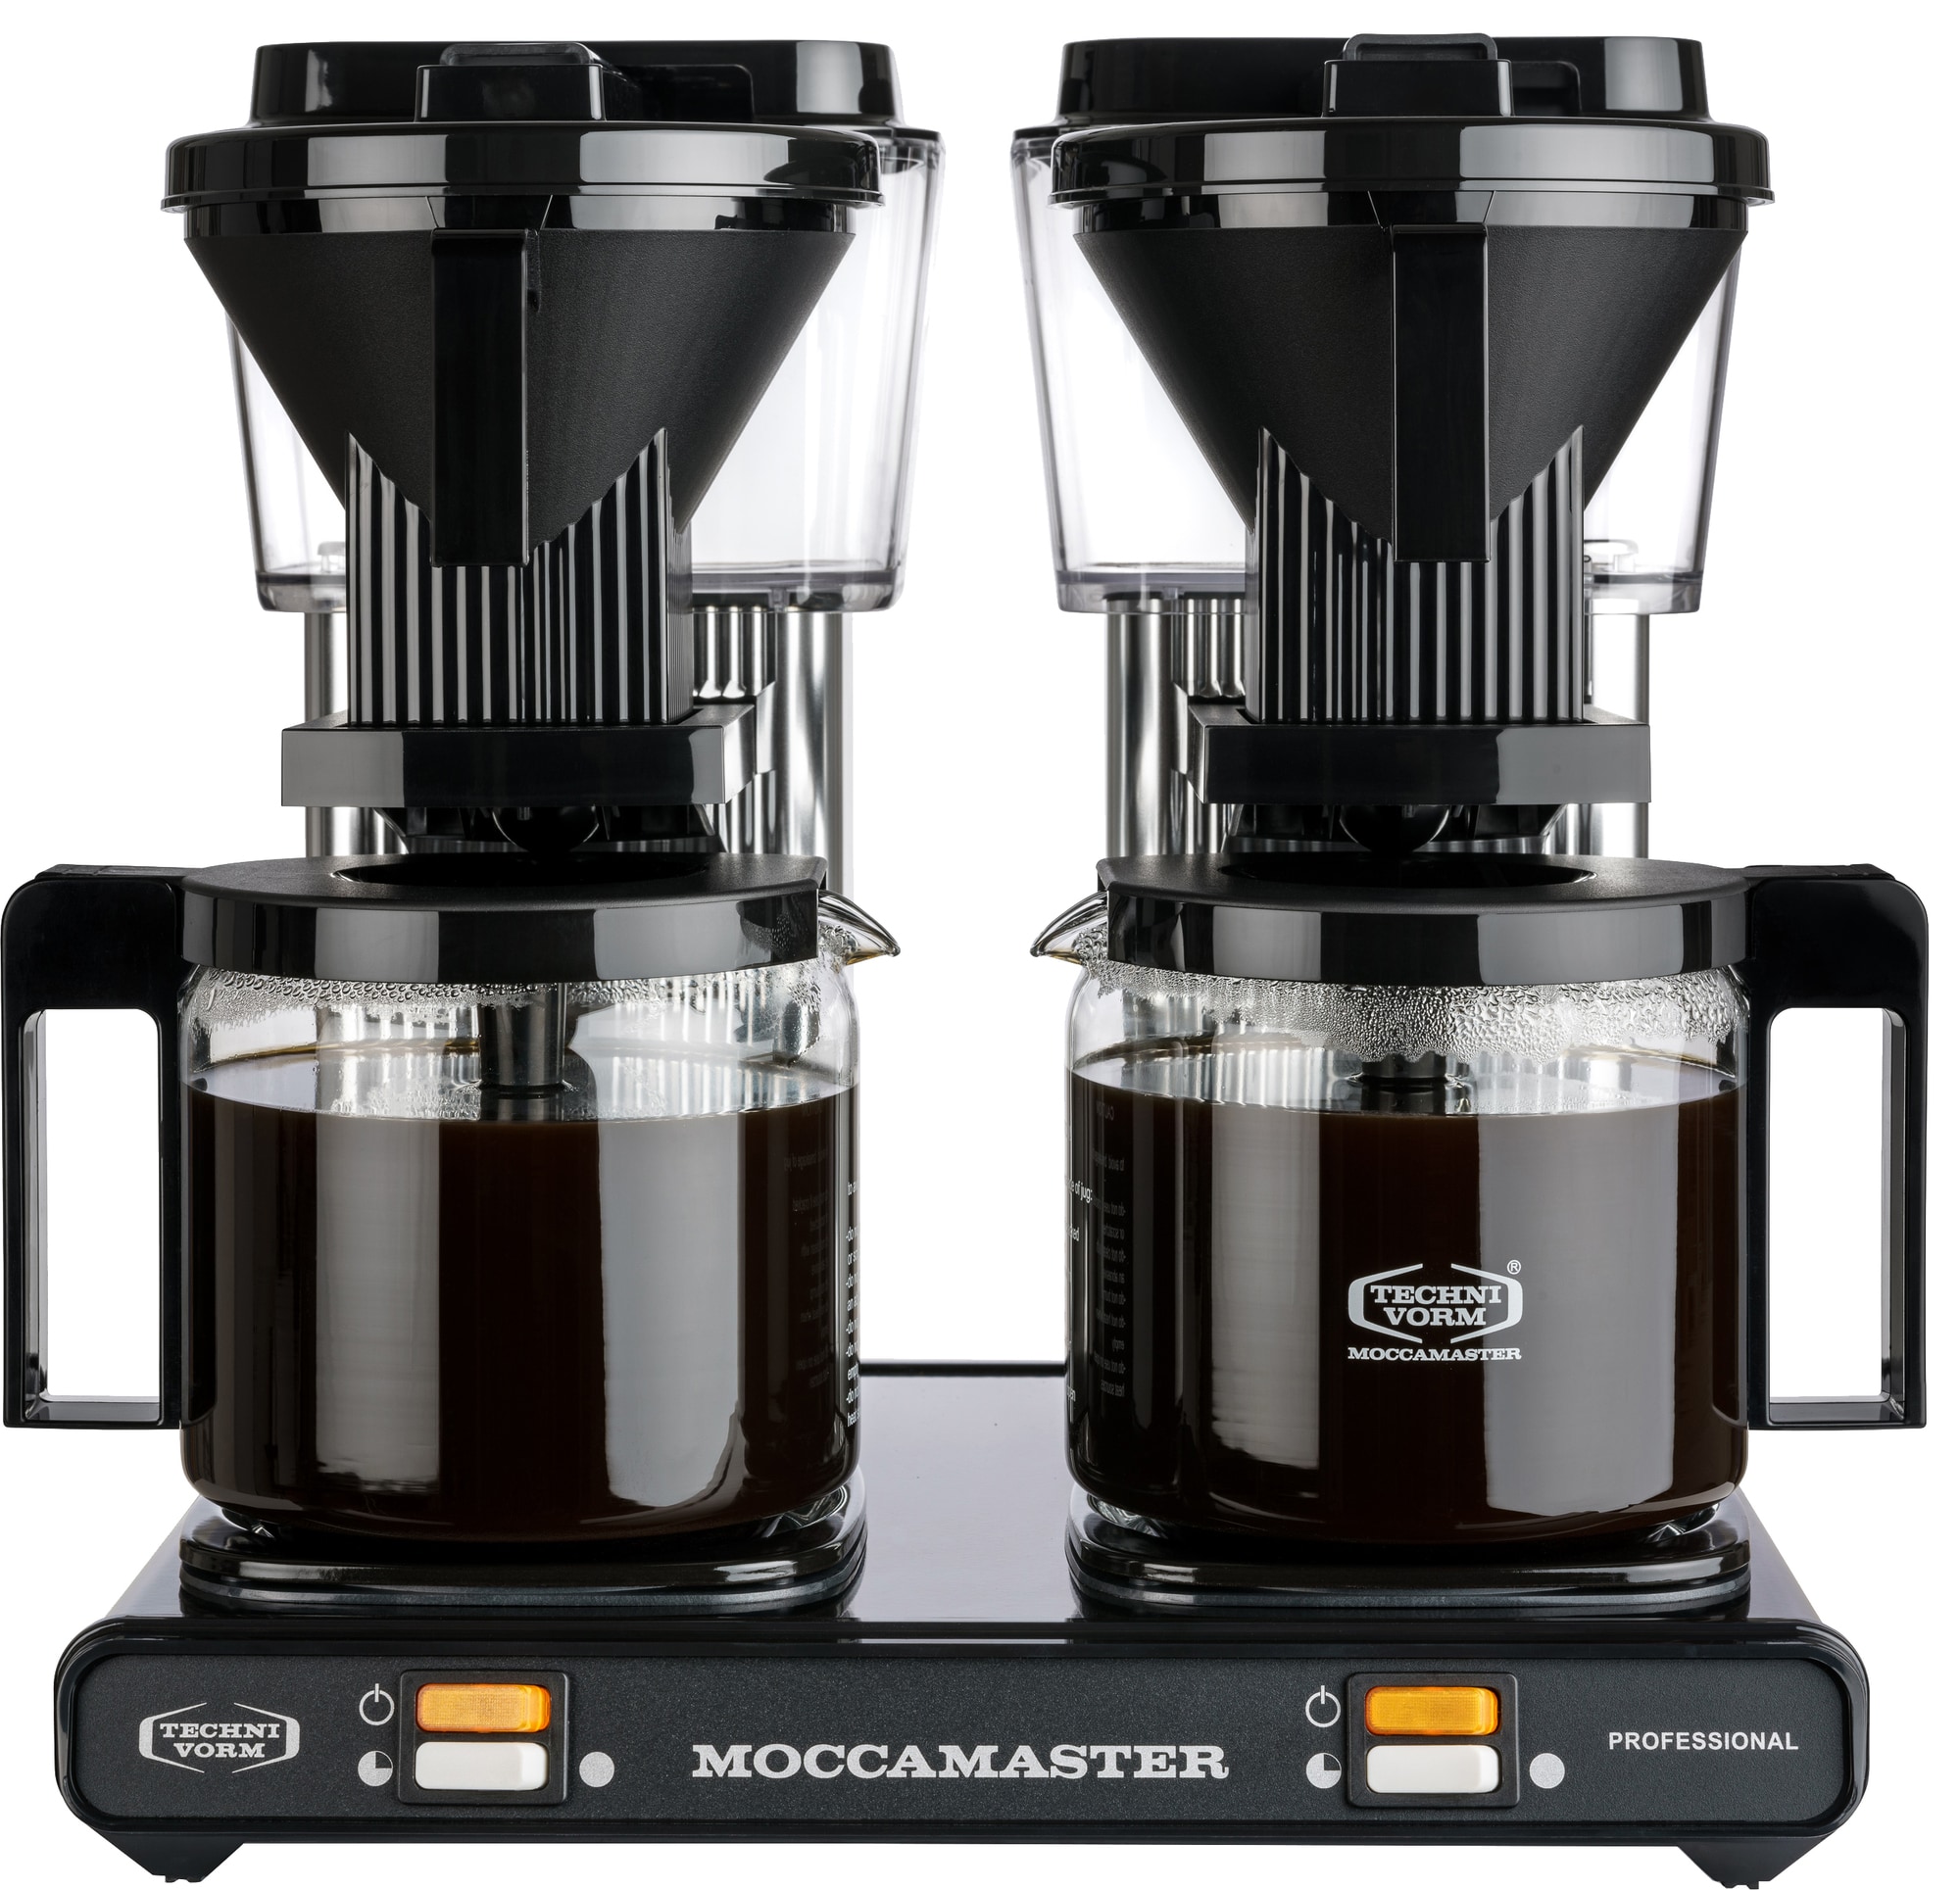 Moccamaster Professional Double kahvinkeitin 59366 - Gigantti verkkokauppa